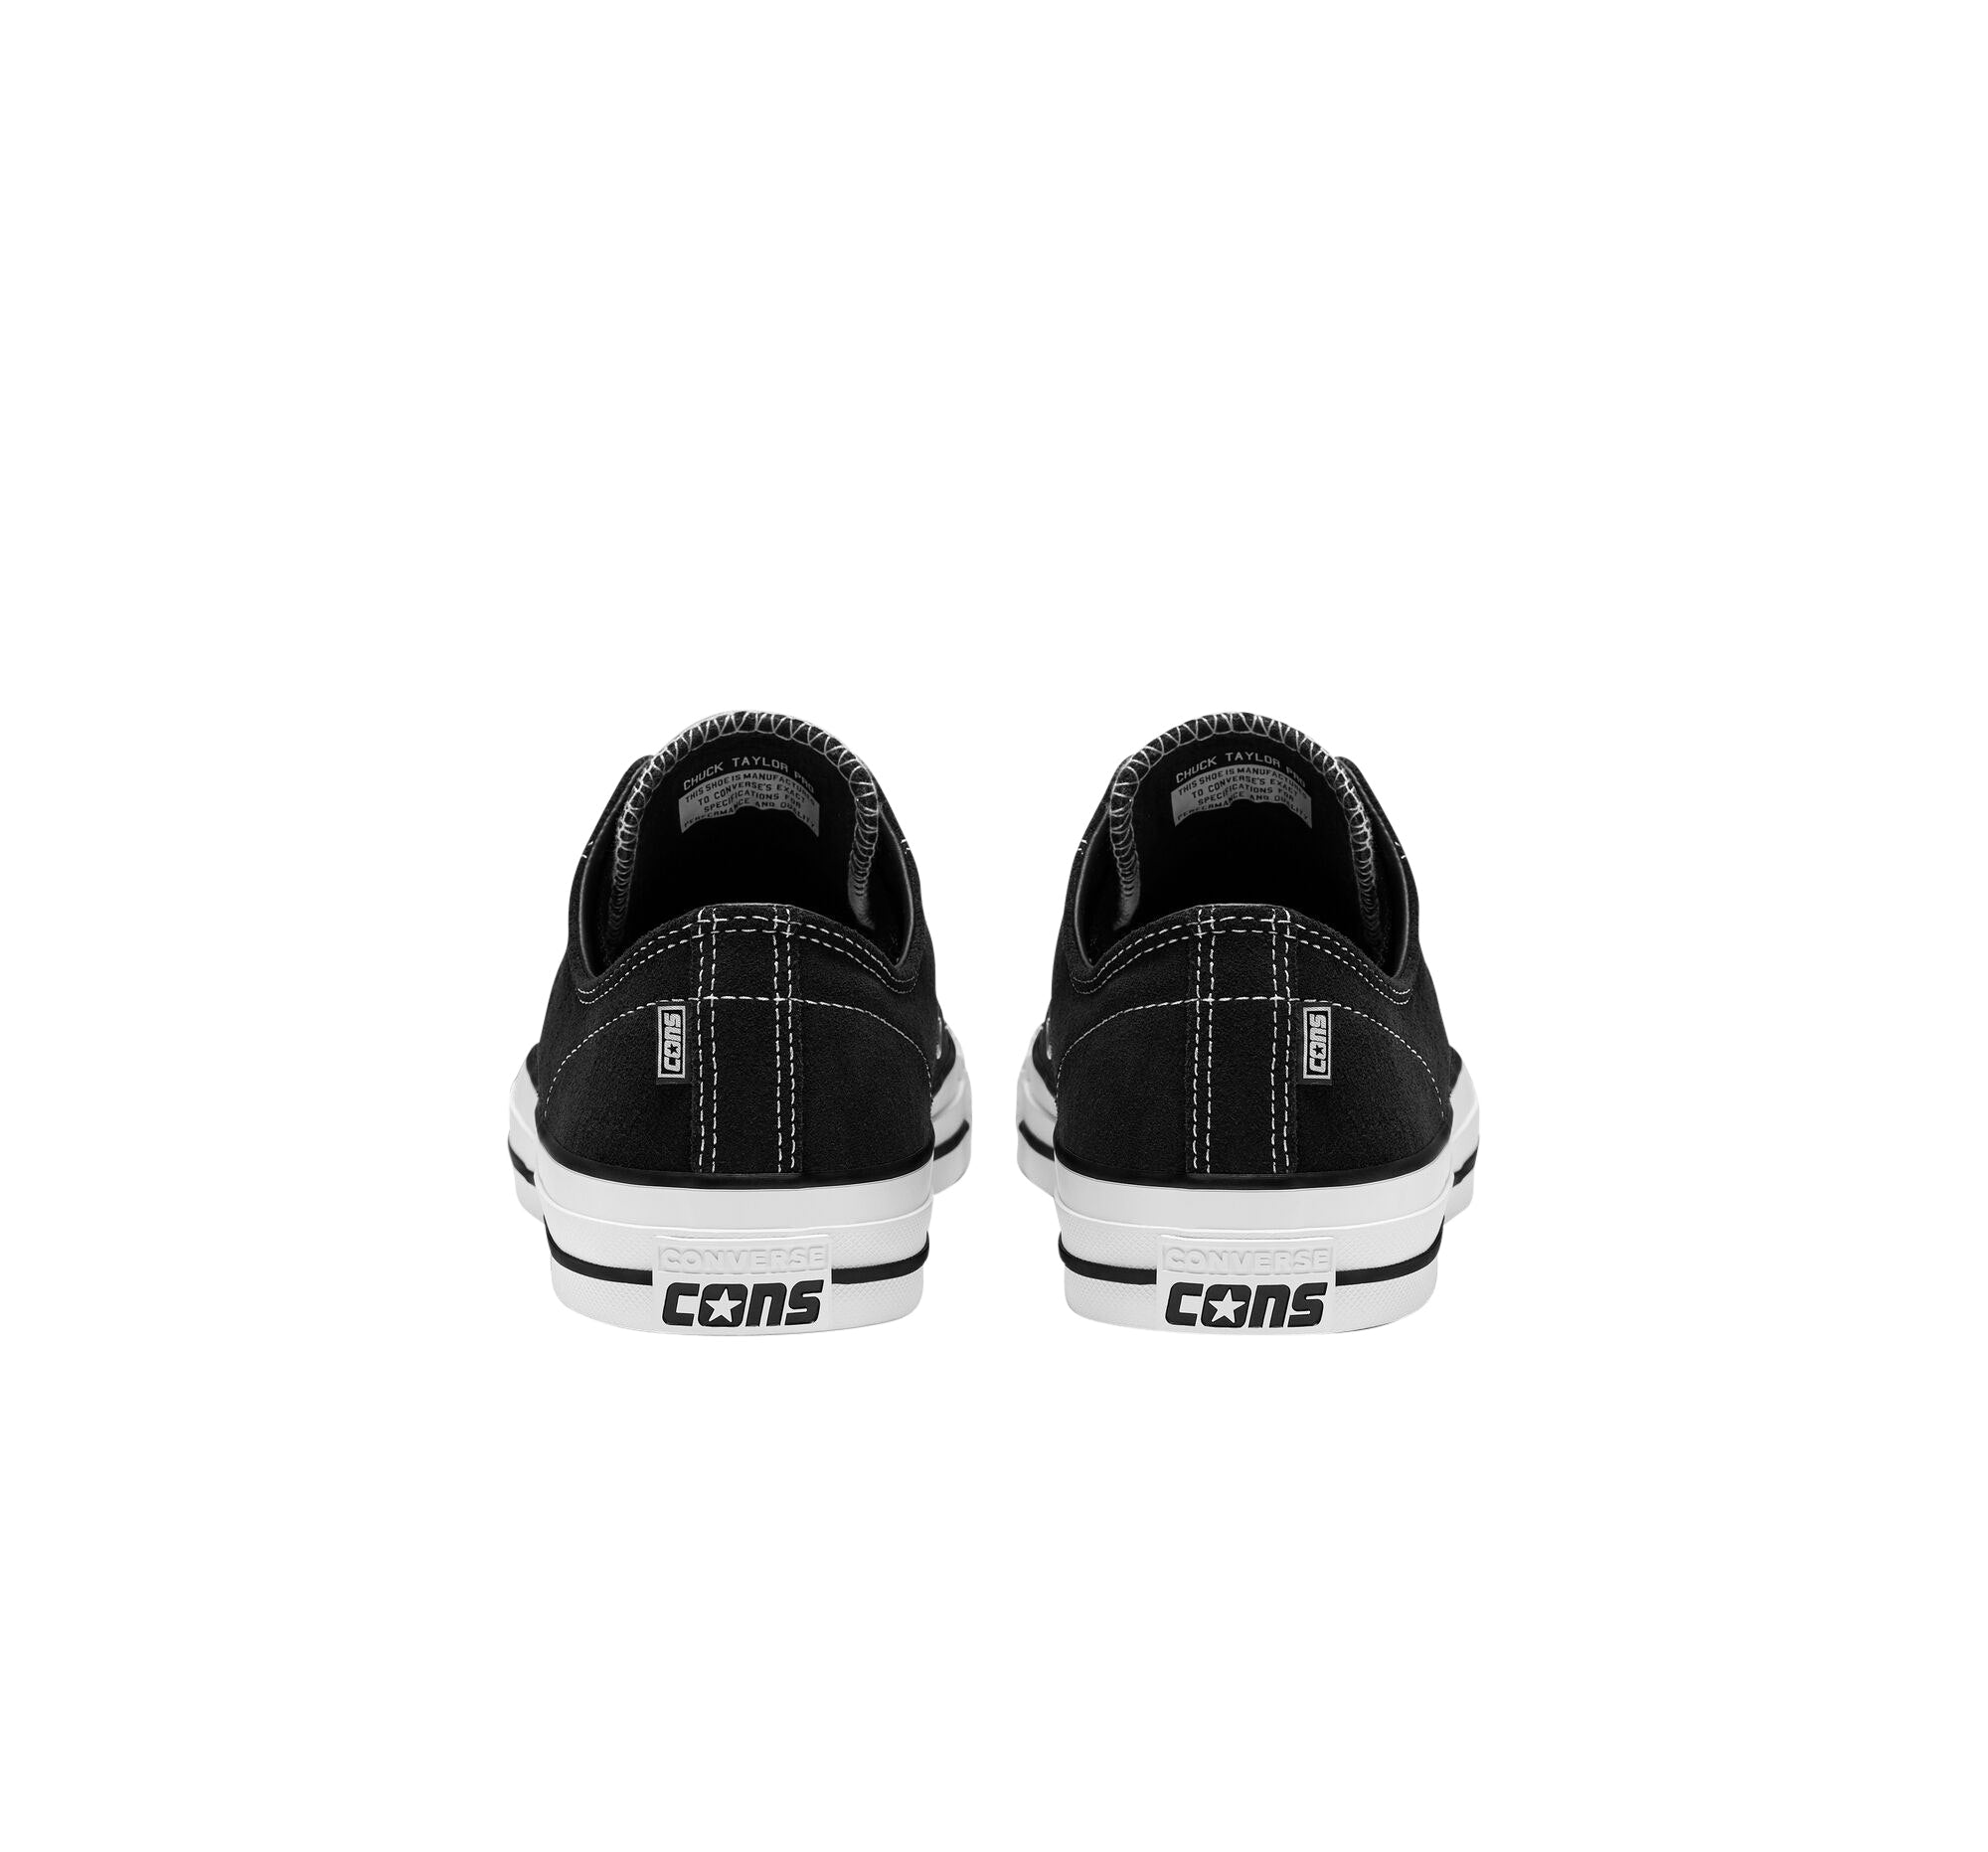 Converse Cons Ctas Pro Low Suede - Black/White